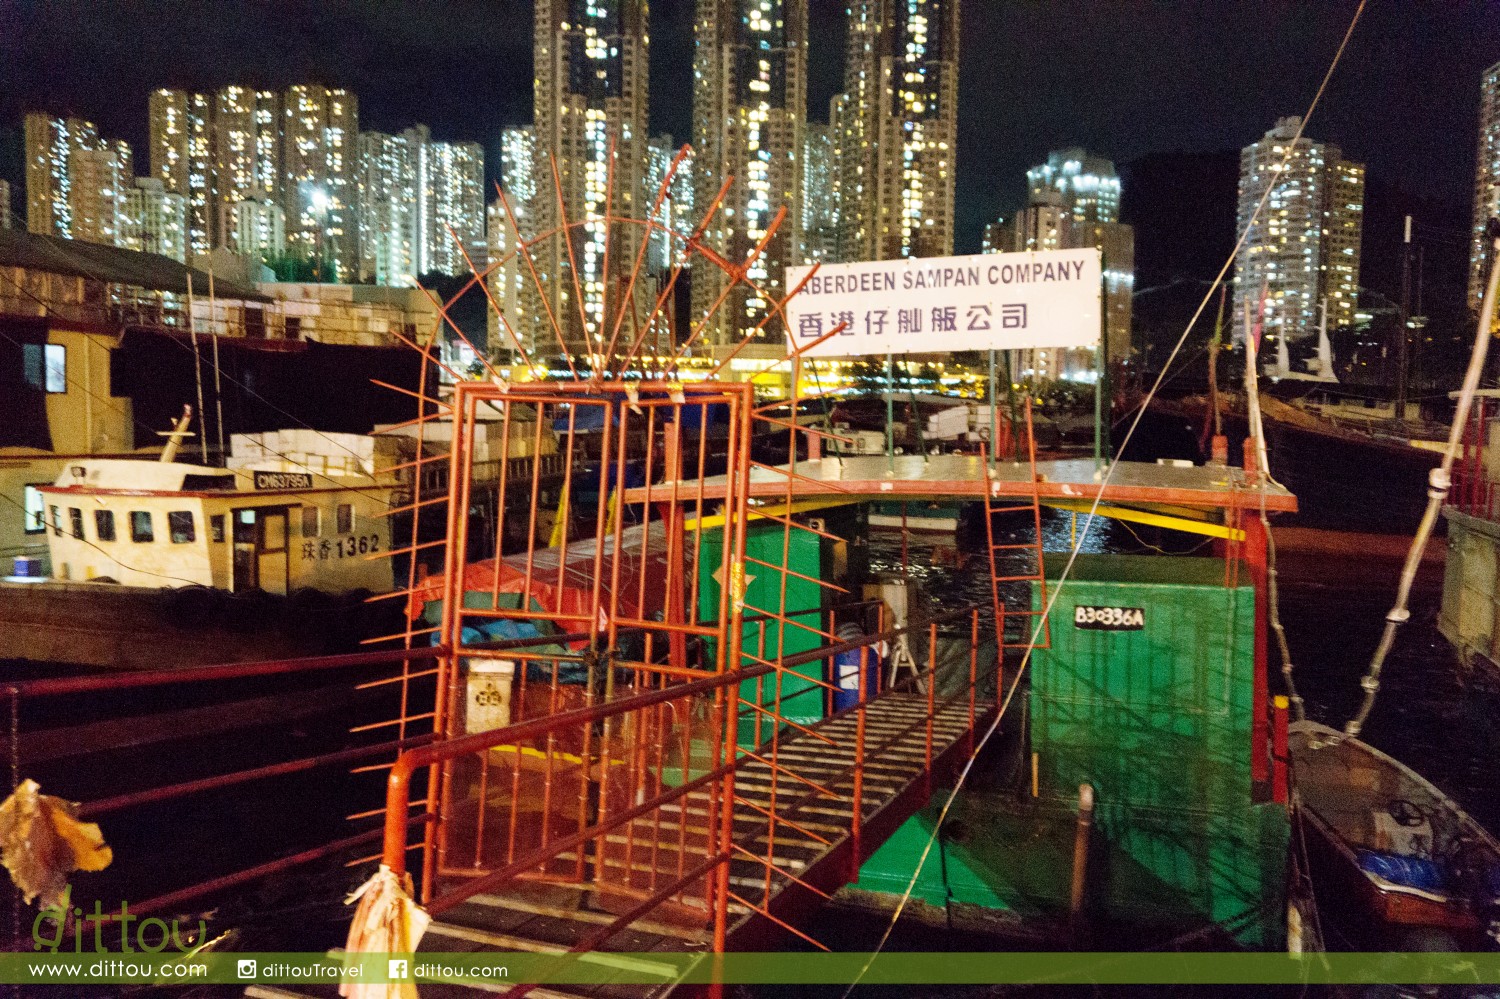 我在很早以前已經聽說過香港仔海濱公園有不定時營業的艇仔粉，可惜今天碰不上，以後有機會再來吧。